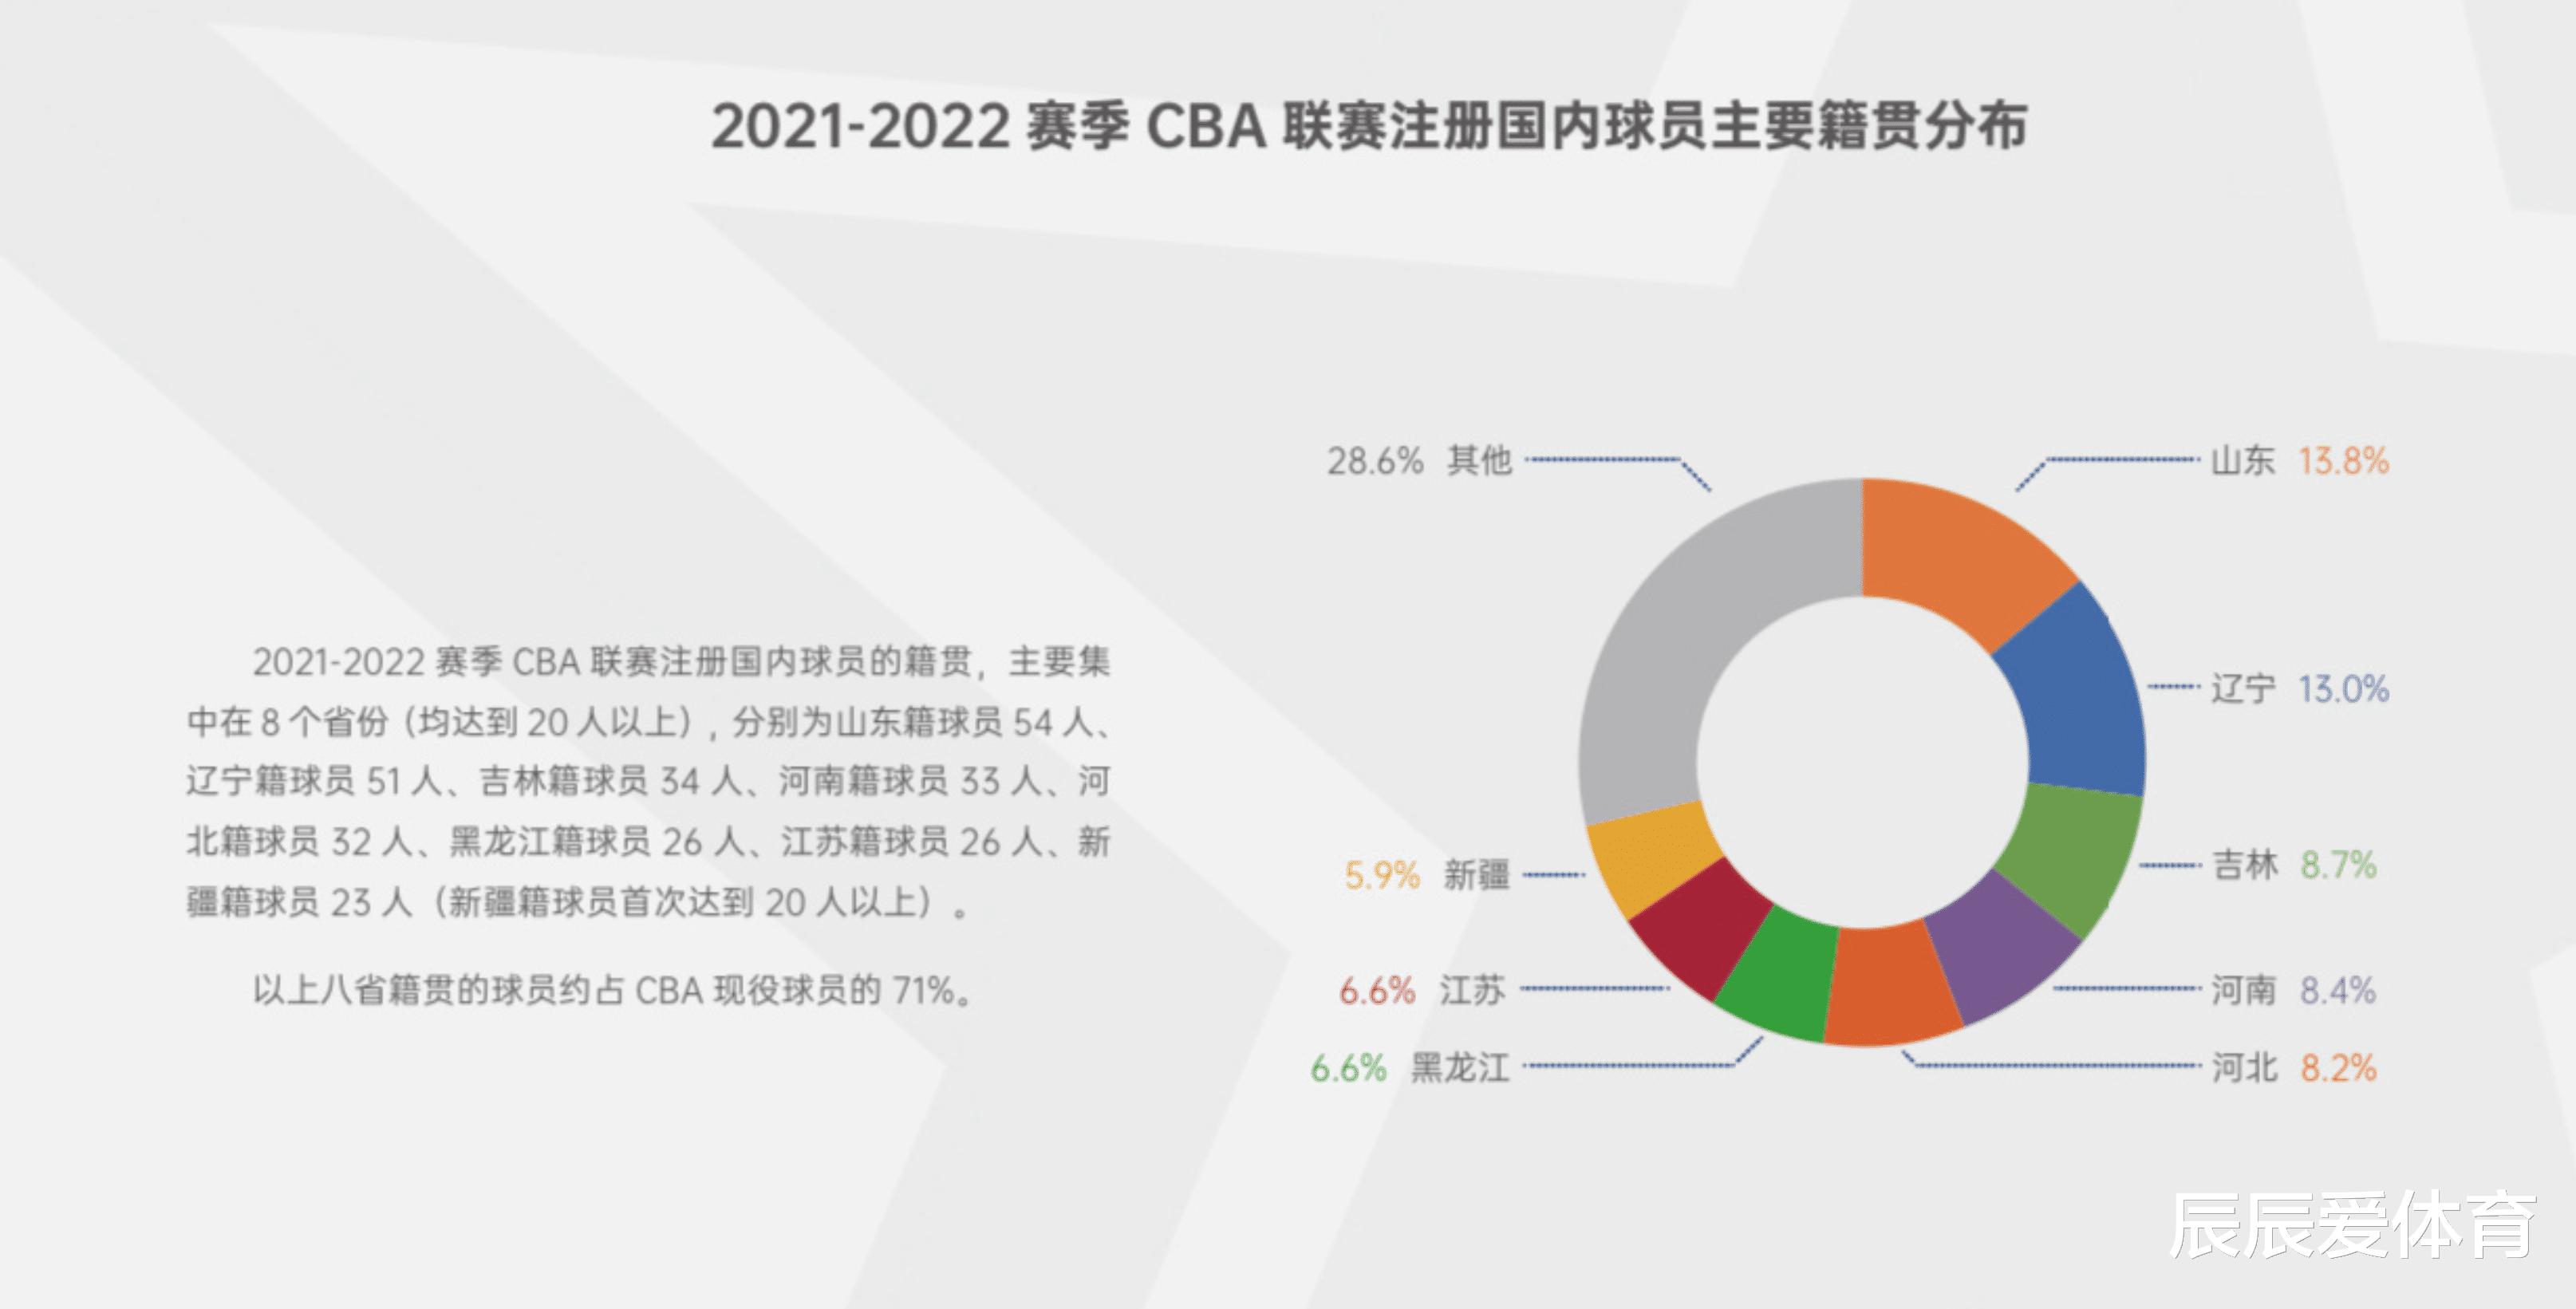 CBA sắp trở thành quá khứ và đội bóng rổ nữ Trung Quốc đã áp đảo ngai vàng hàng đầu của Nhật Bản ở châu Á (2)